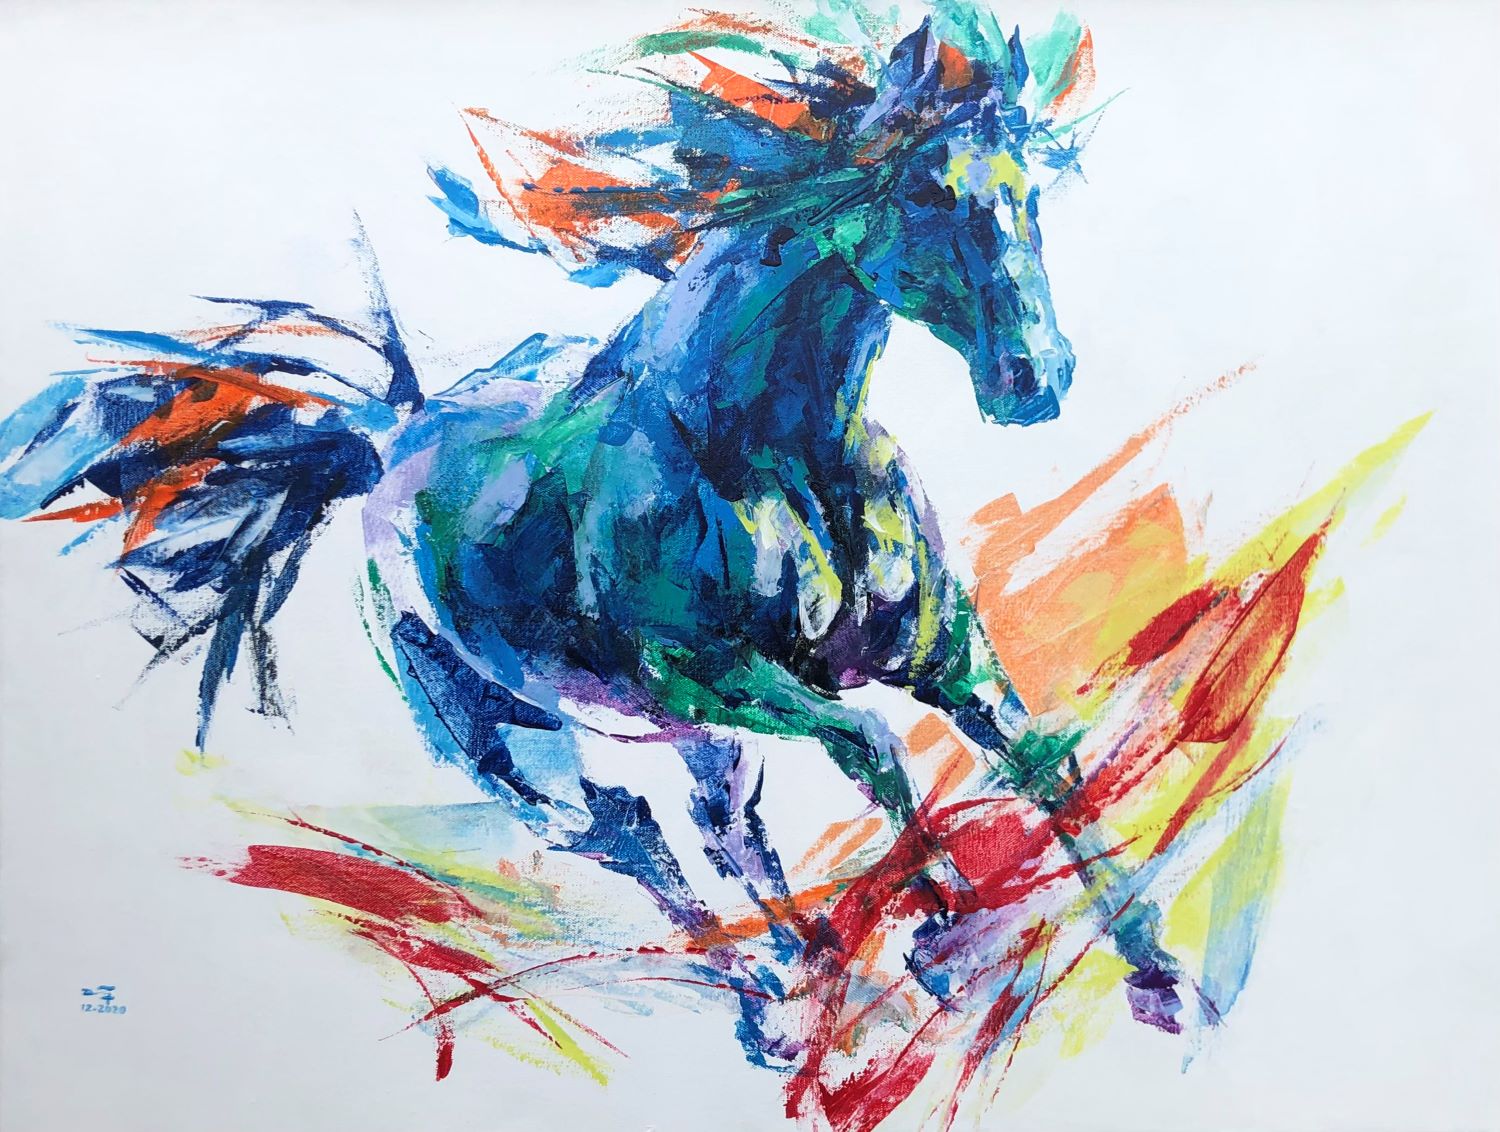 Tranh acrylic Wild Horse I của nghệ sĩ Mai Huy Dũng sẽ khiến bạn phải trầm trồ ngay từ cái nhìn đầu tiên. Chất lượng màu sắc và kỹ thuật vẽ tuyệt vời tạo nên bức tranh ấn tượng đầy màu sắc. Xem hình ảnh về tranh acrylic để cảm nhận sự tài hoa và tinh tế của nghệ thuật này.